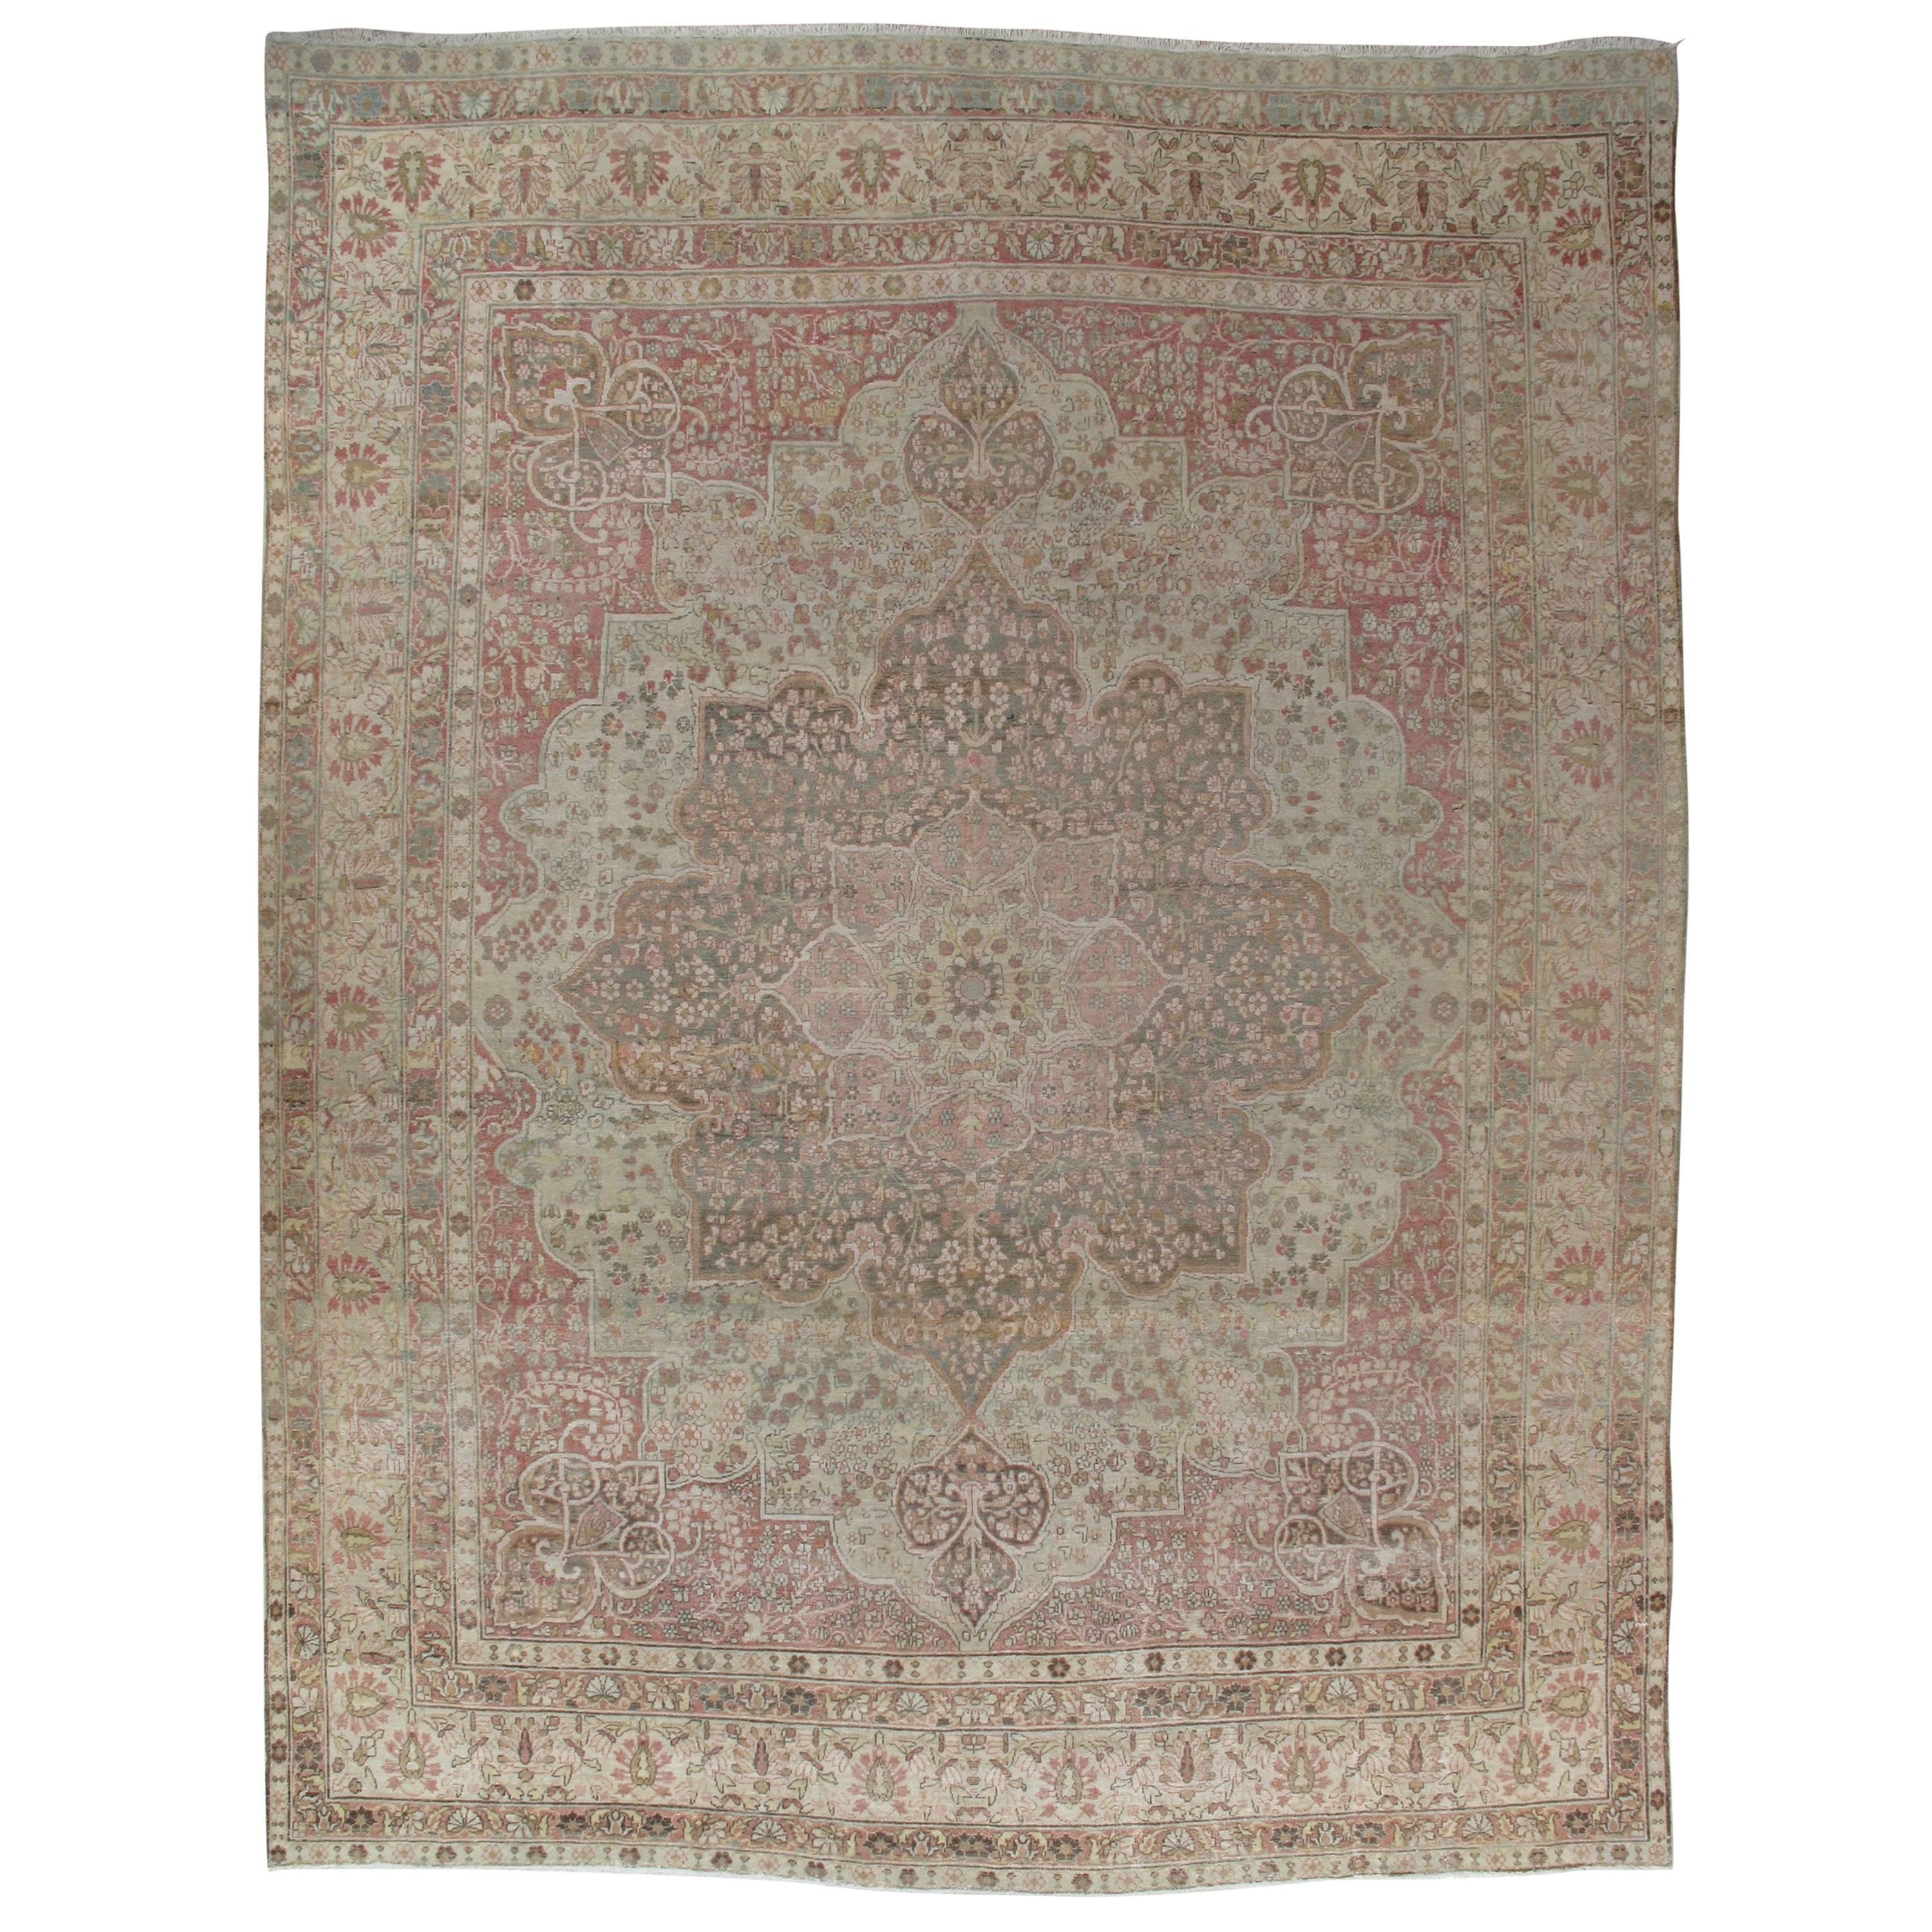 Antique Lavar Kerman Carpet, Soft Pastel Colors, Ivory, Pink, Light Gray/Blue For Sale